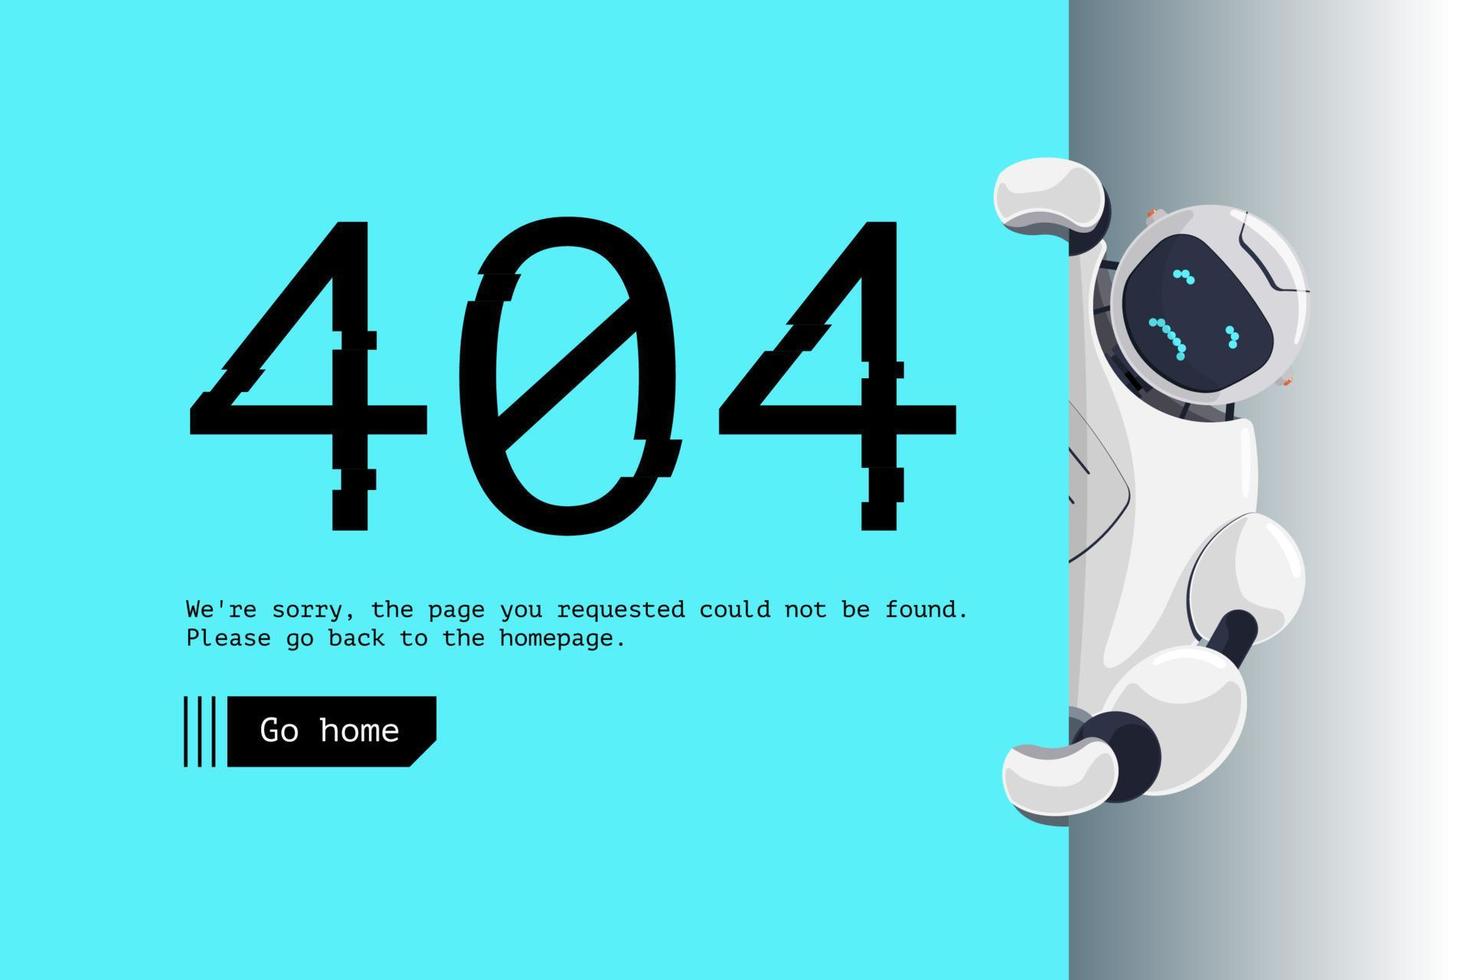 websitepagina niet gevonden. verkeerde URL-adresfout 404. triest robotkarakter met blauw bord. sitecrash op technisch werk webontwerpsjabloon met chatbot-mascotte. vector cartoon bot assistentie mislukt